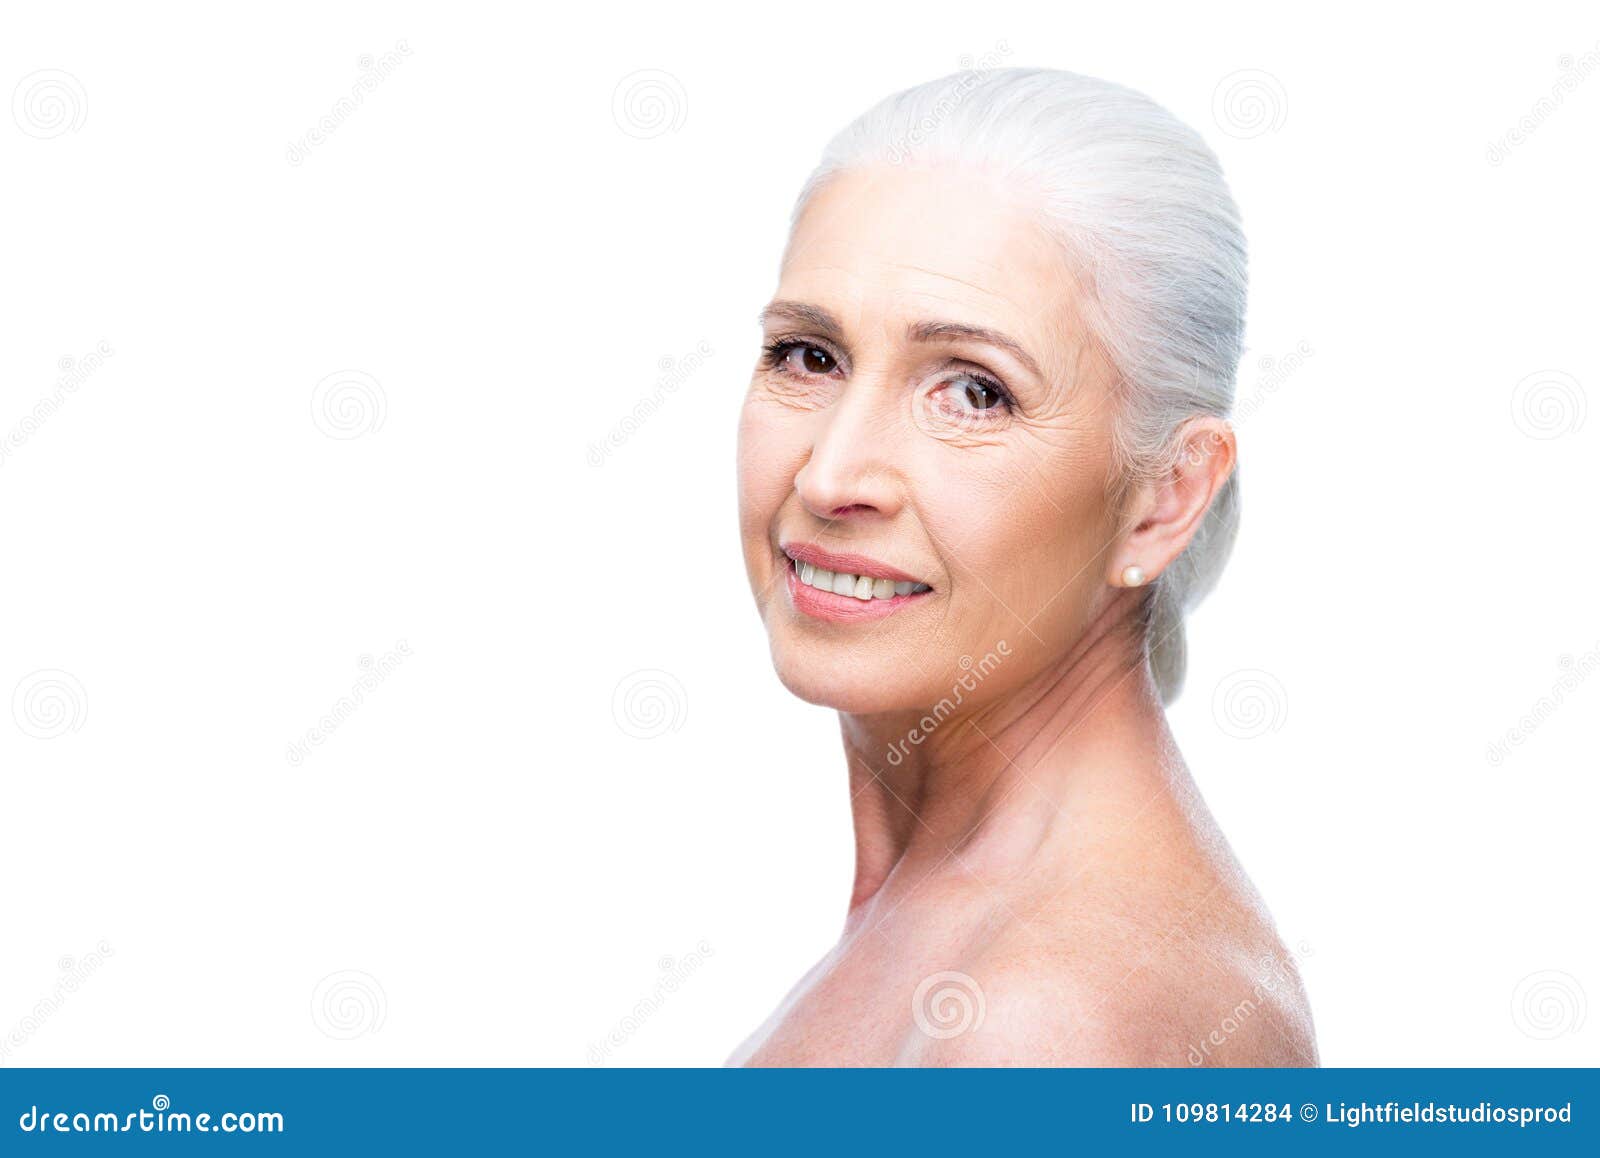 Elderly Desnudo Photographs